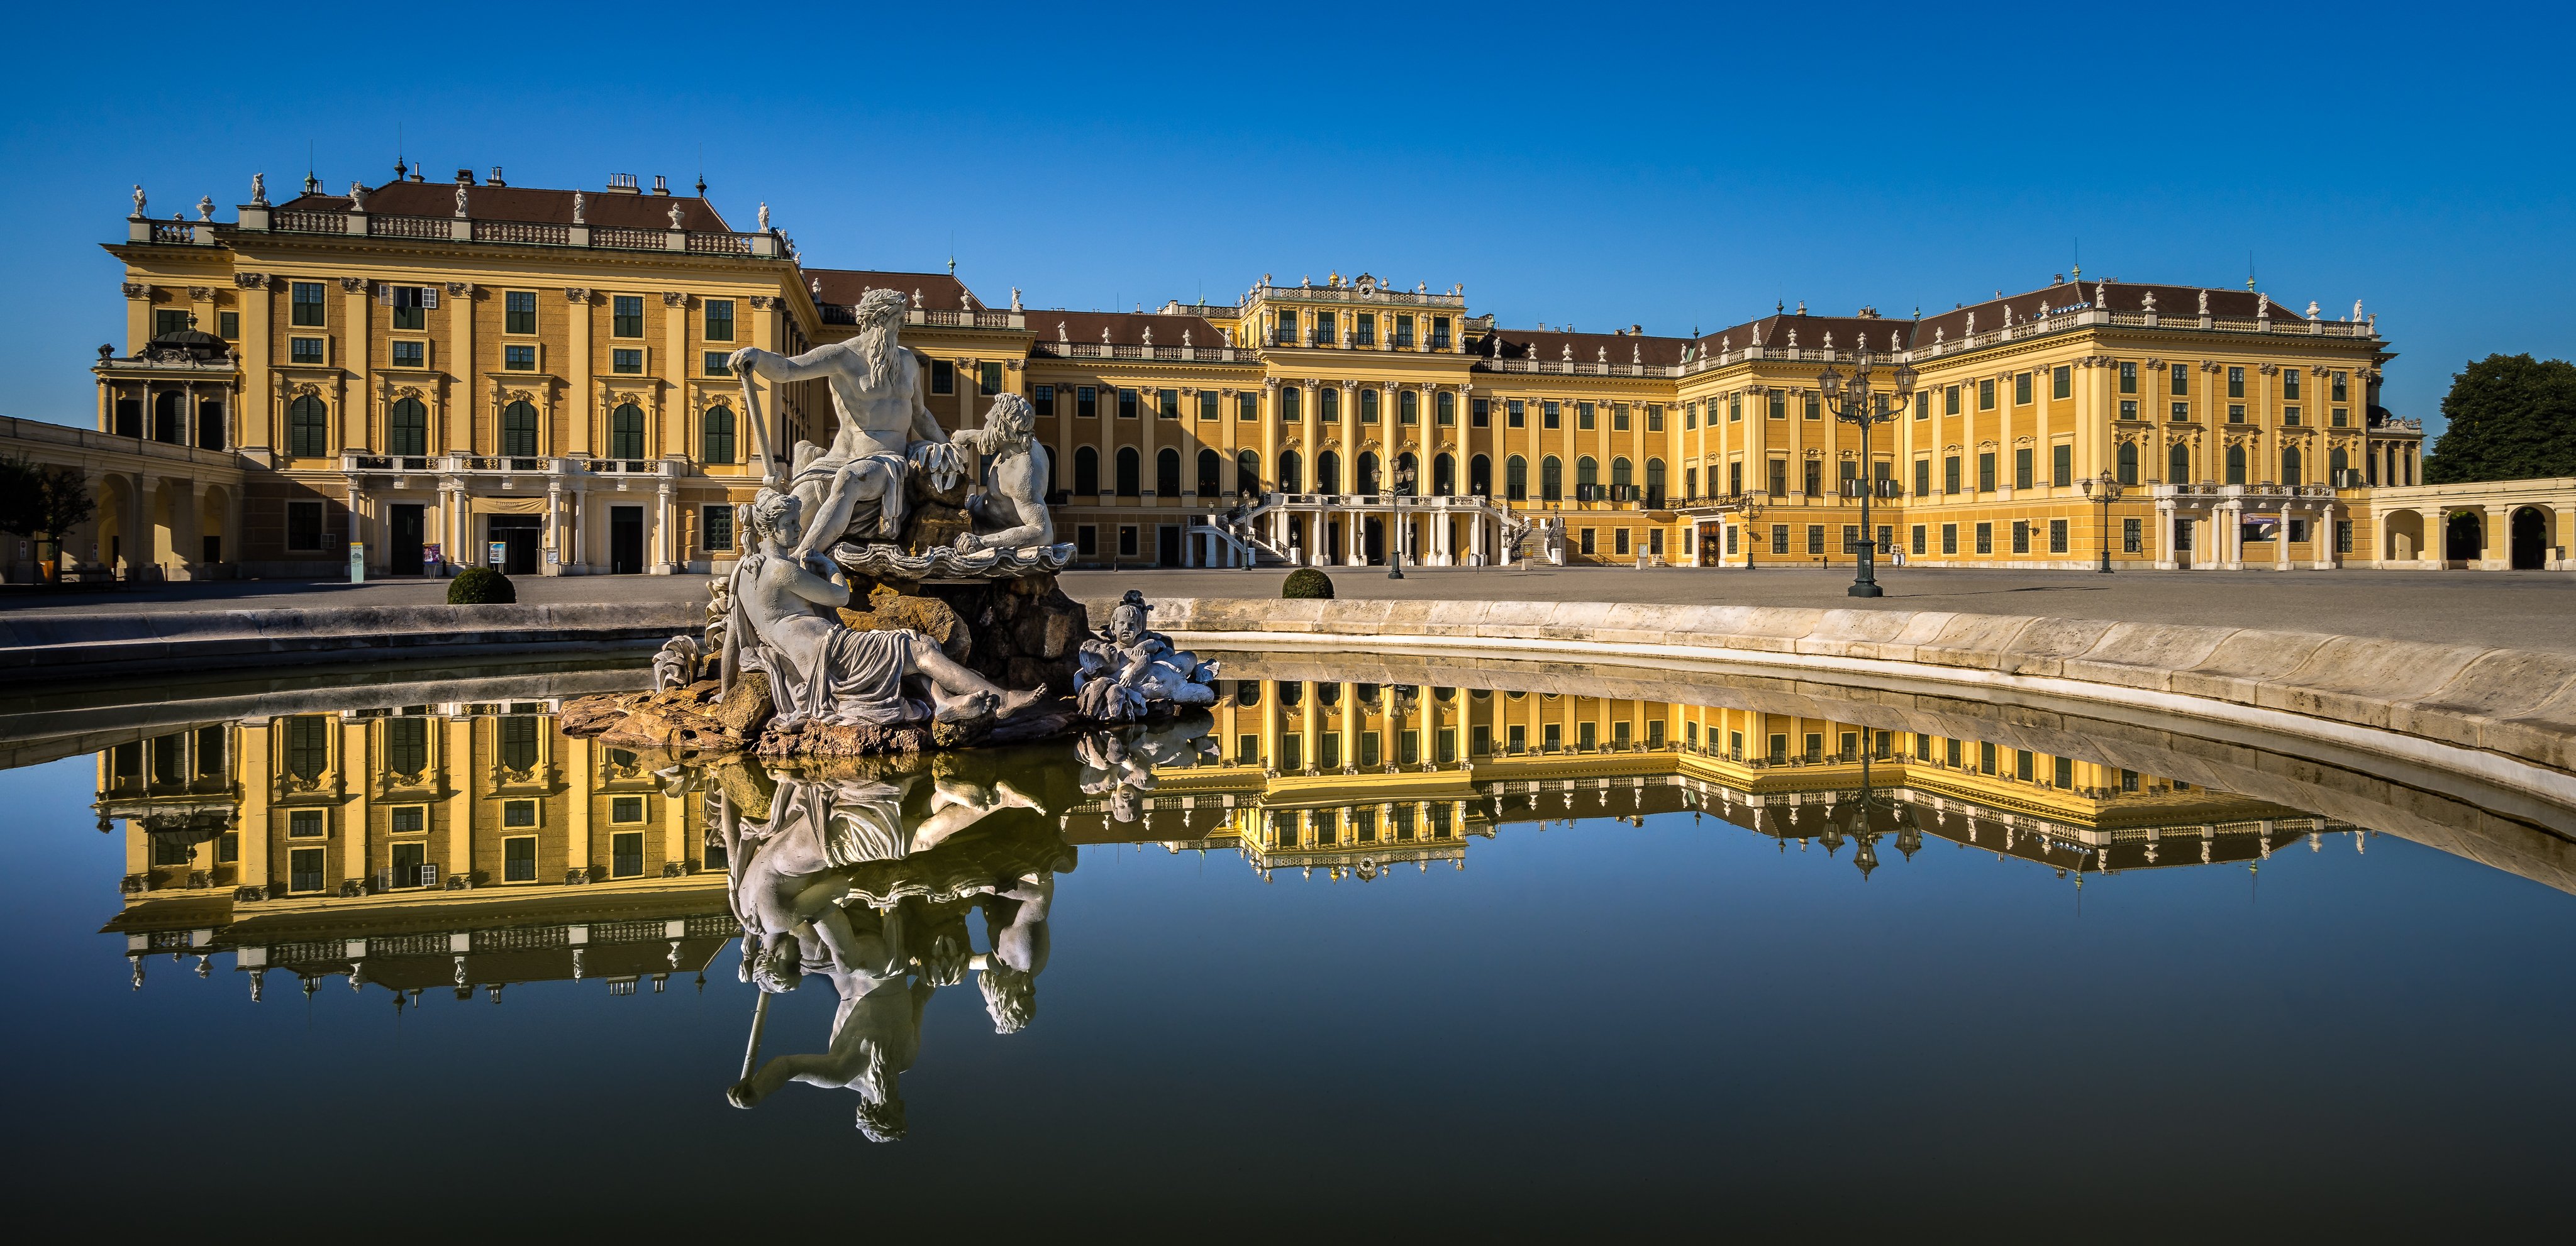 sculptures, Austria, Palace, Schonbrunn, Palace, Vienna, Cities ...